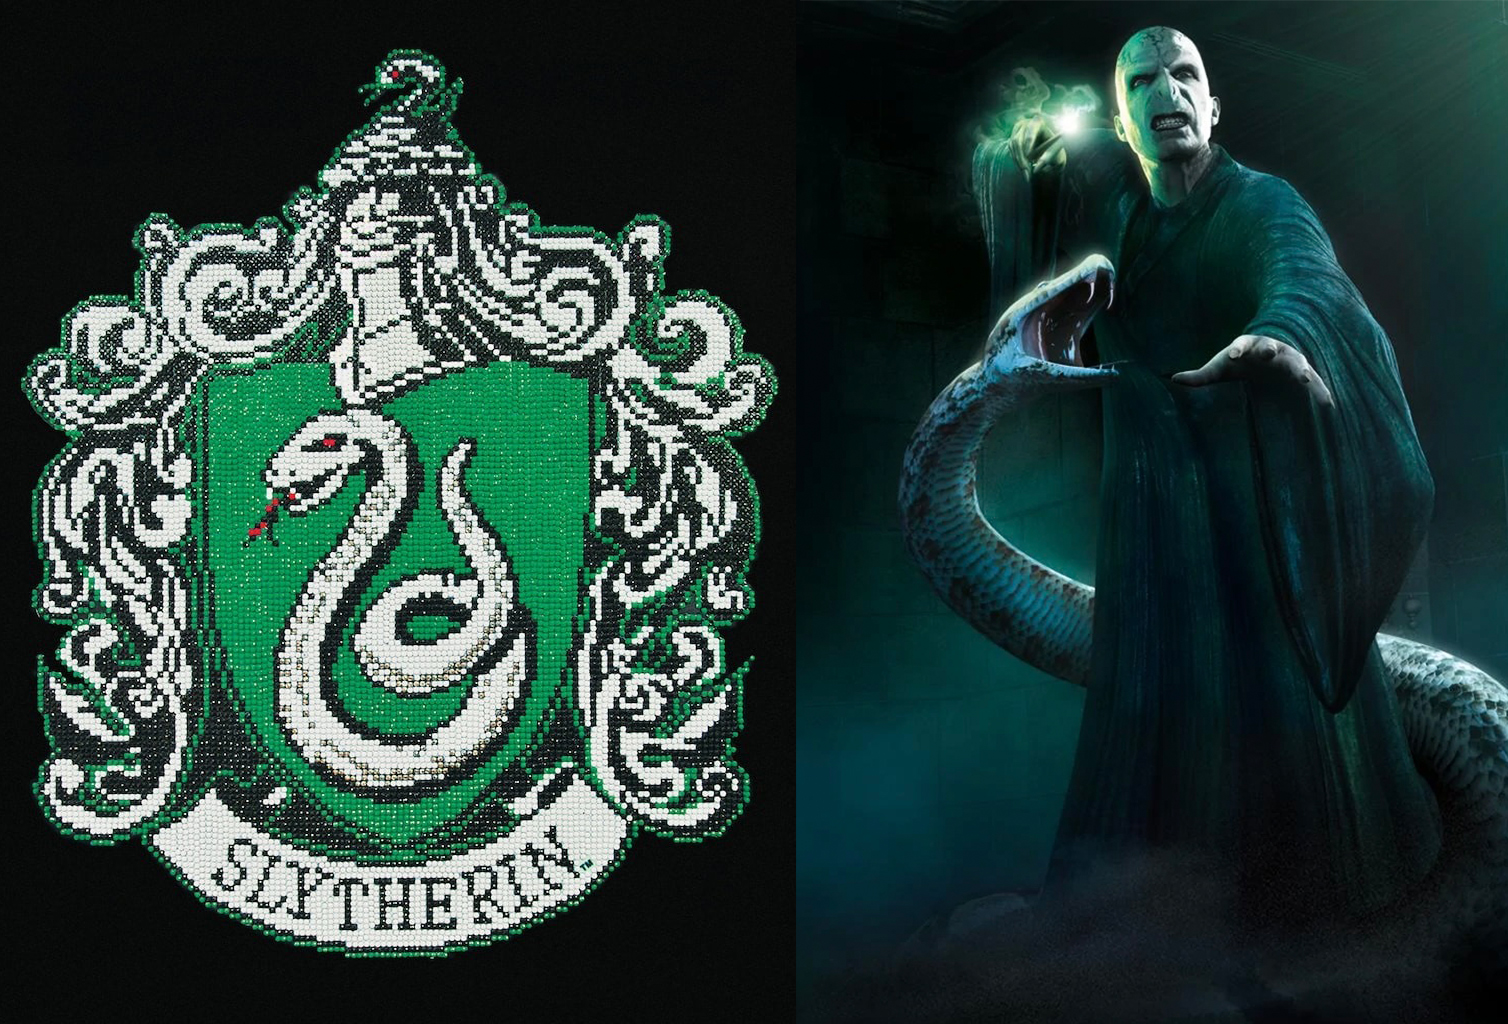 Một hình ảnh rắn mang ý nghĩa tiêu cực có thể kể đến là huy hiệu của nhà Slytherin hay thú cưng của chúa tể Voldemort trong phim Harry Potter.